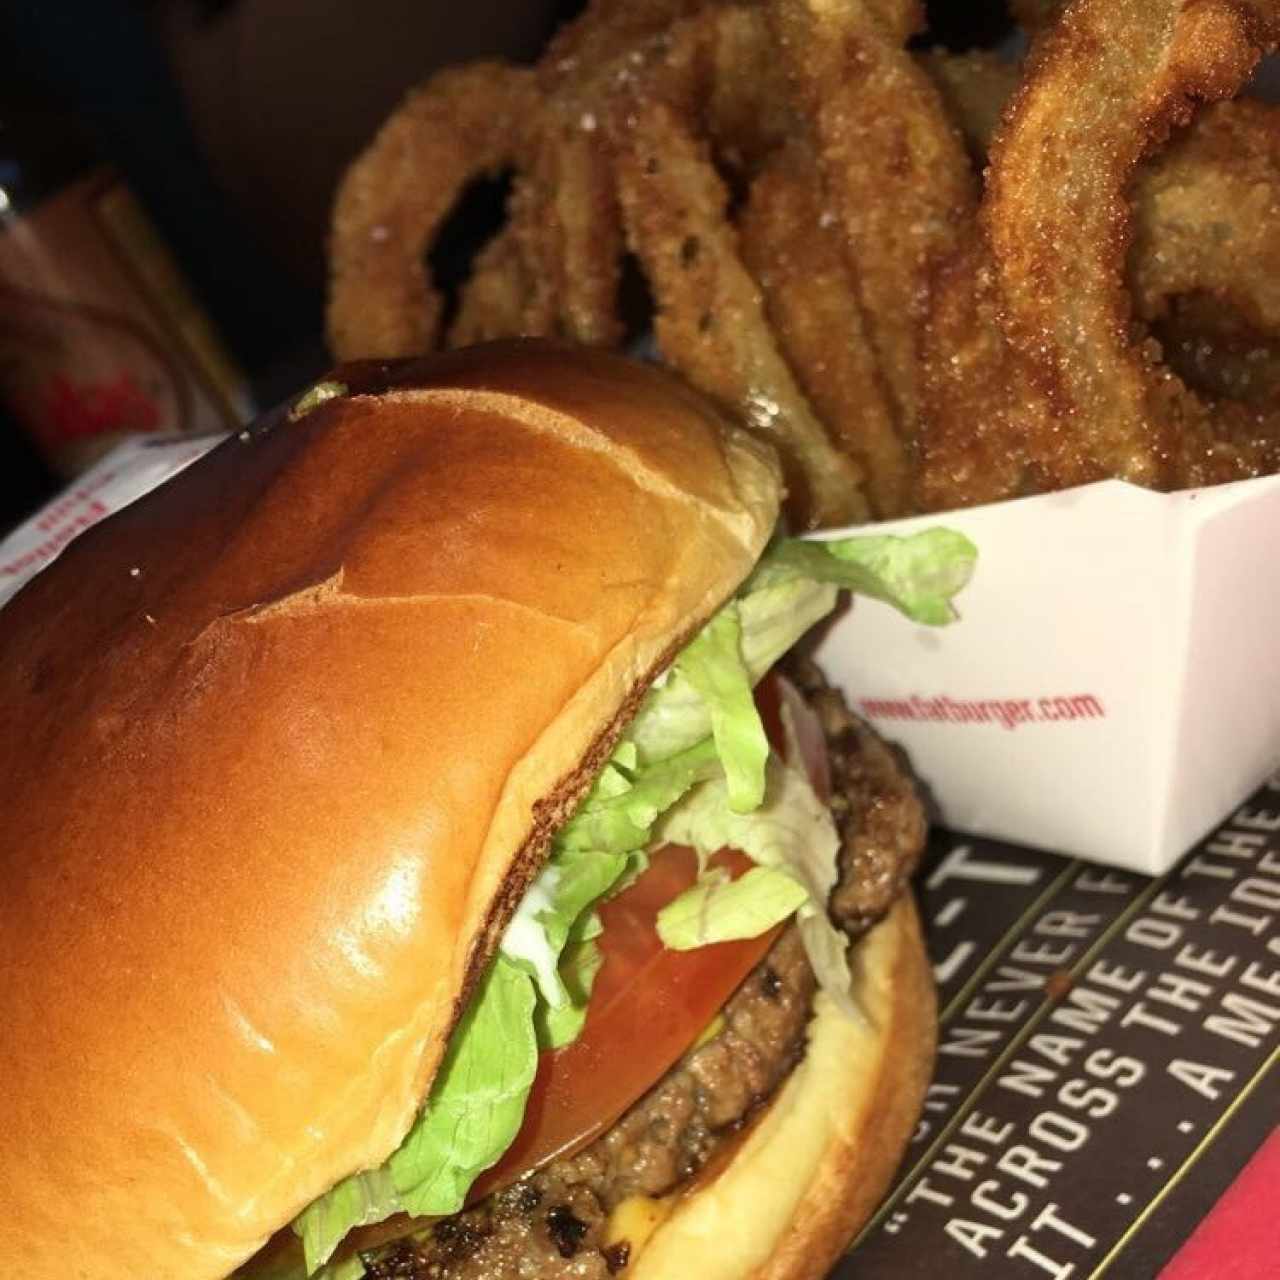 The Fatburger - Original